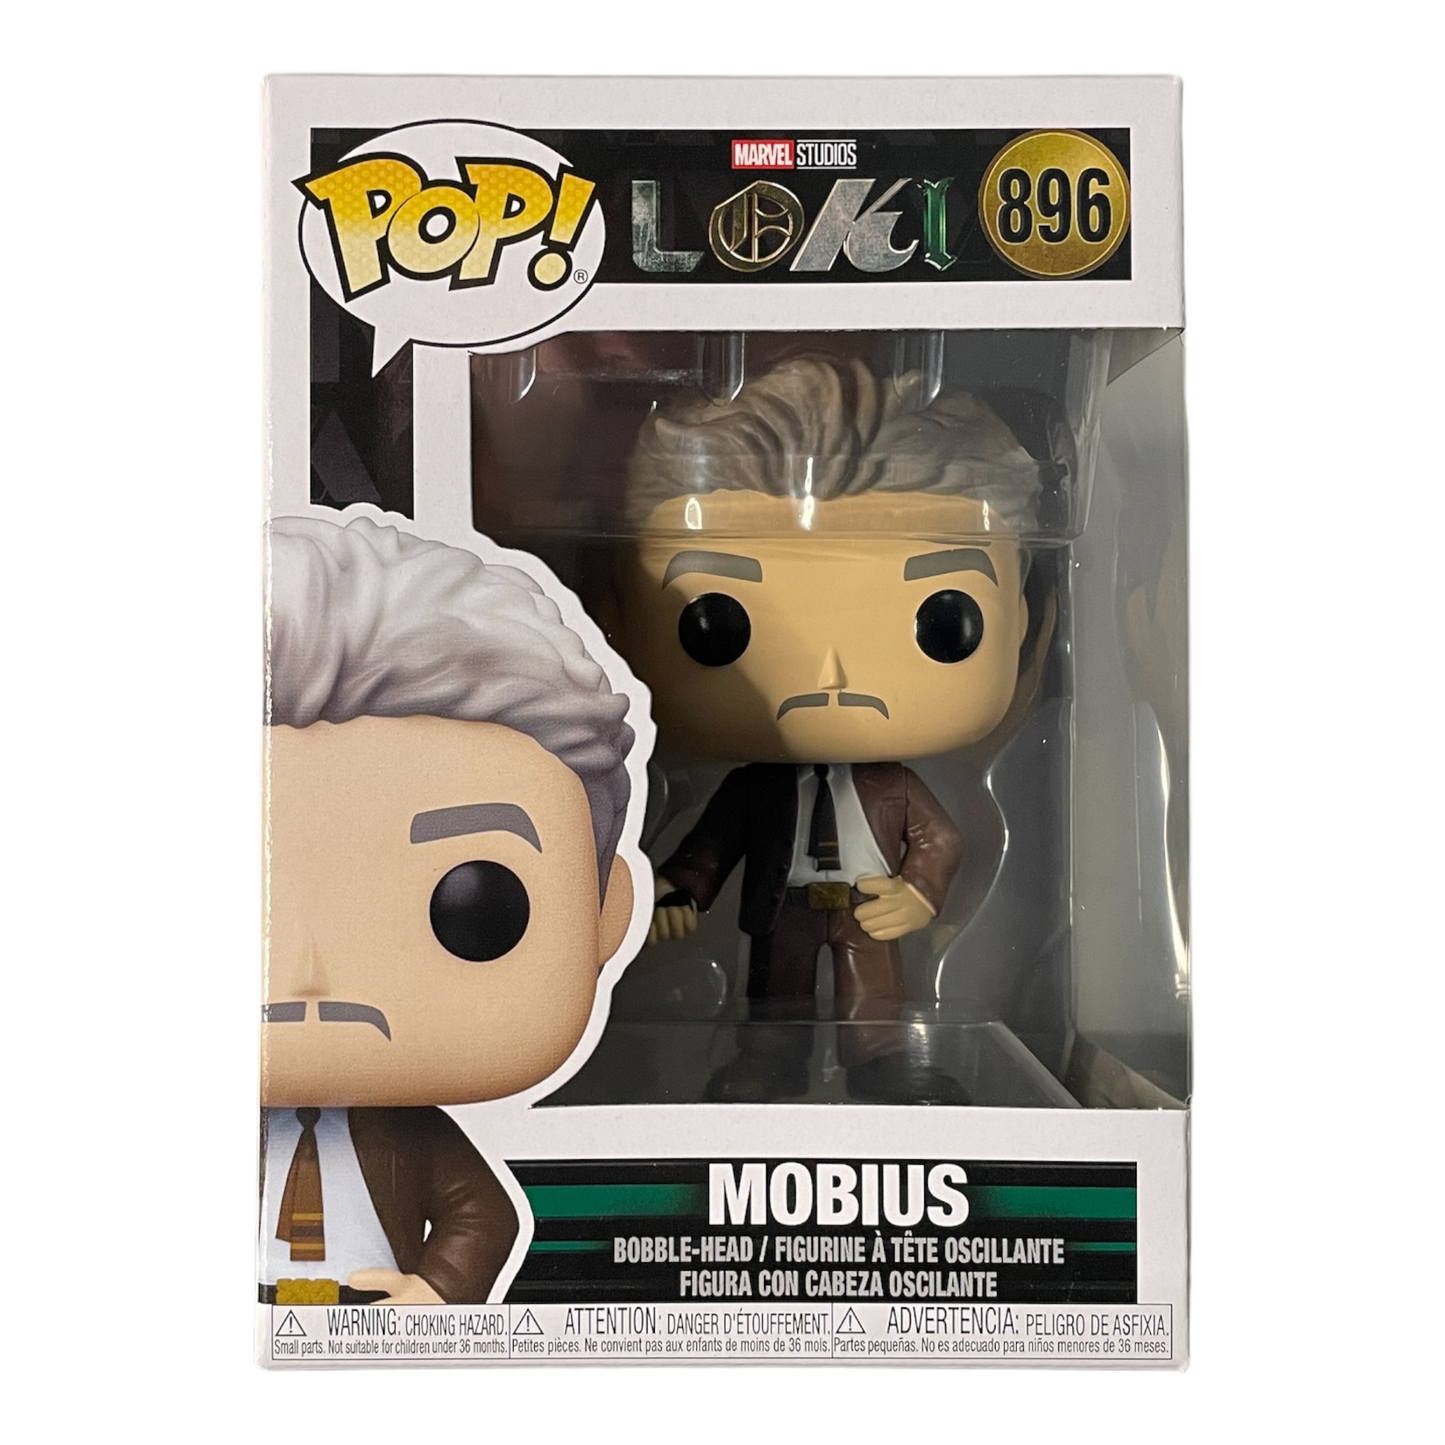 Mobius #896